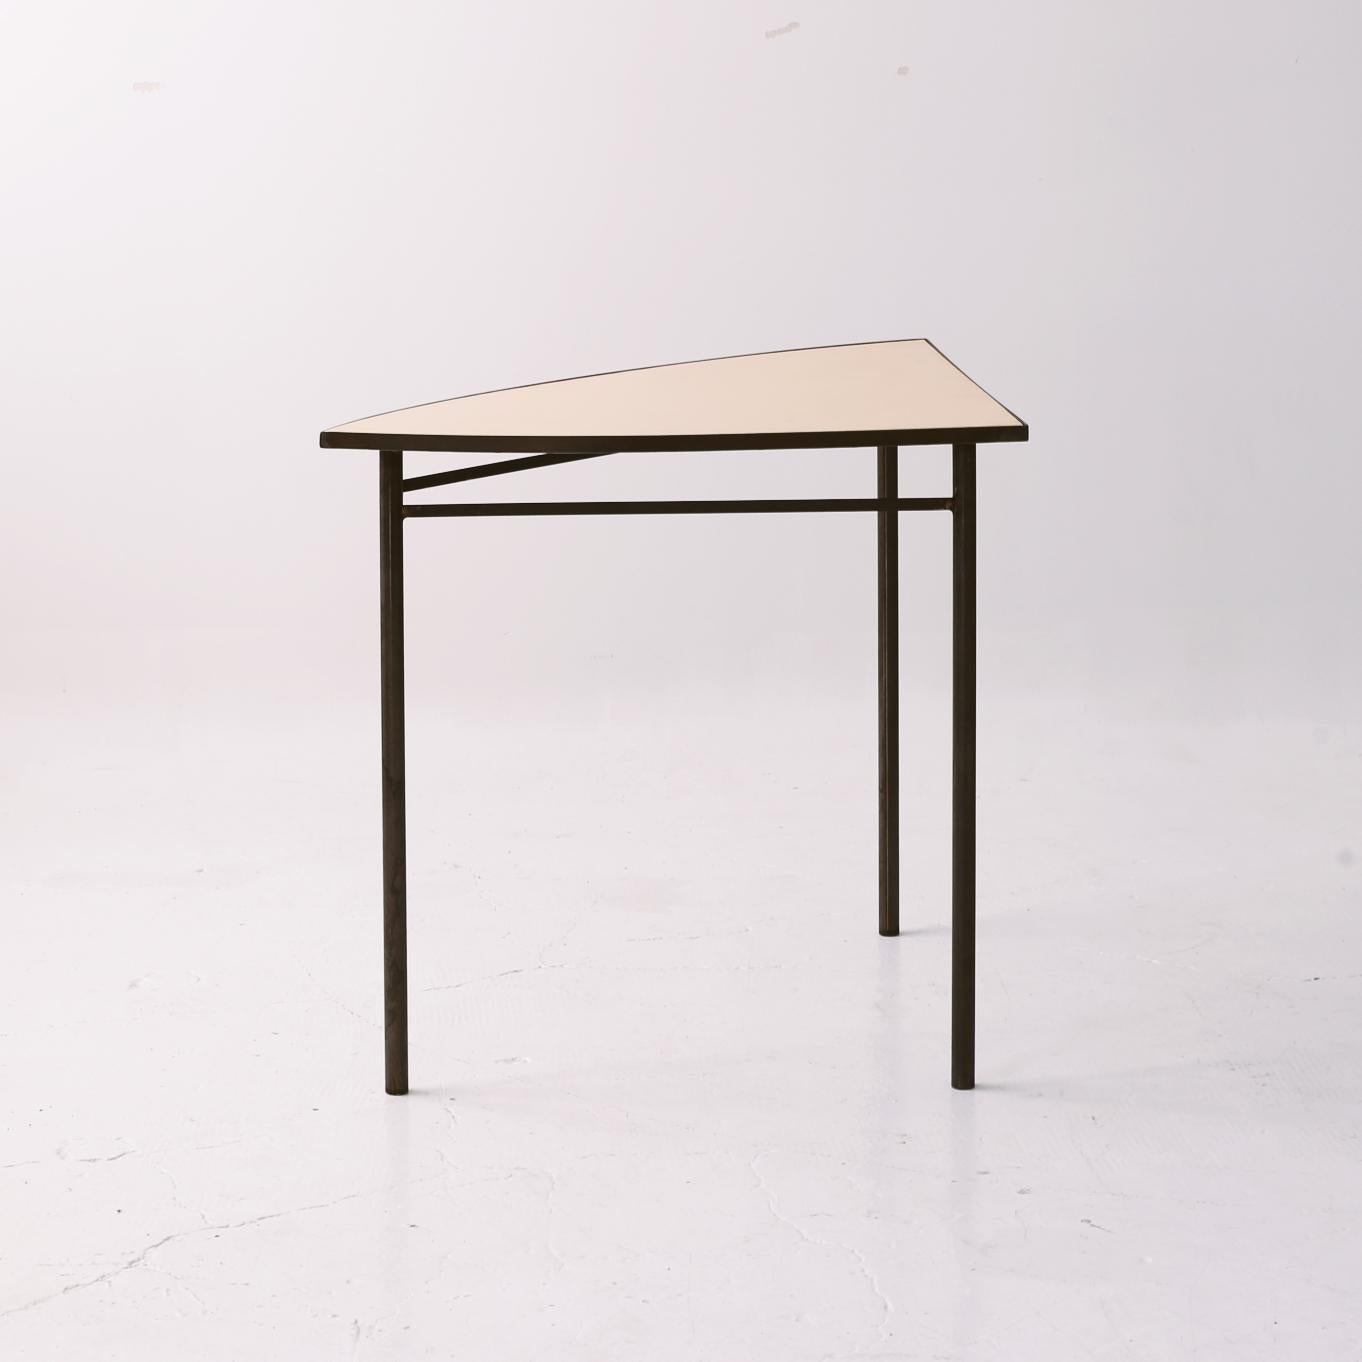 Blue Tabula 'Non' Rasa Table Set by Studio Traccia For Sale 1